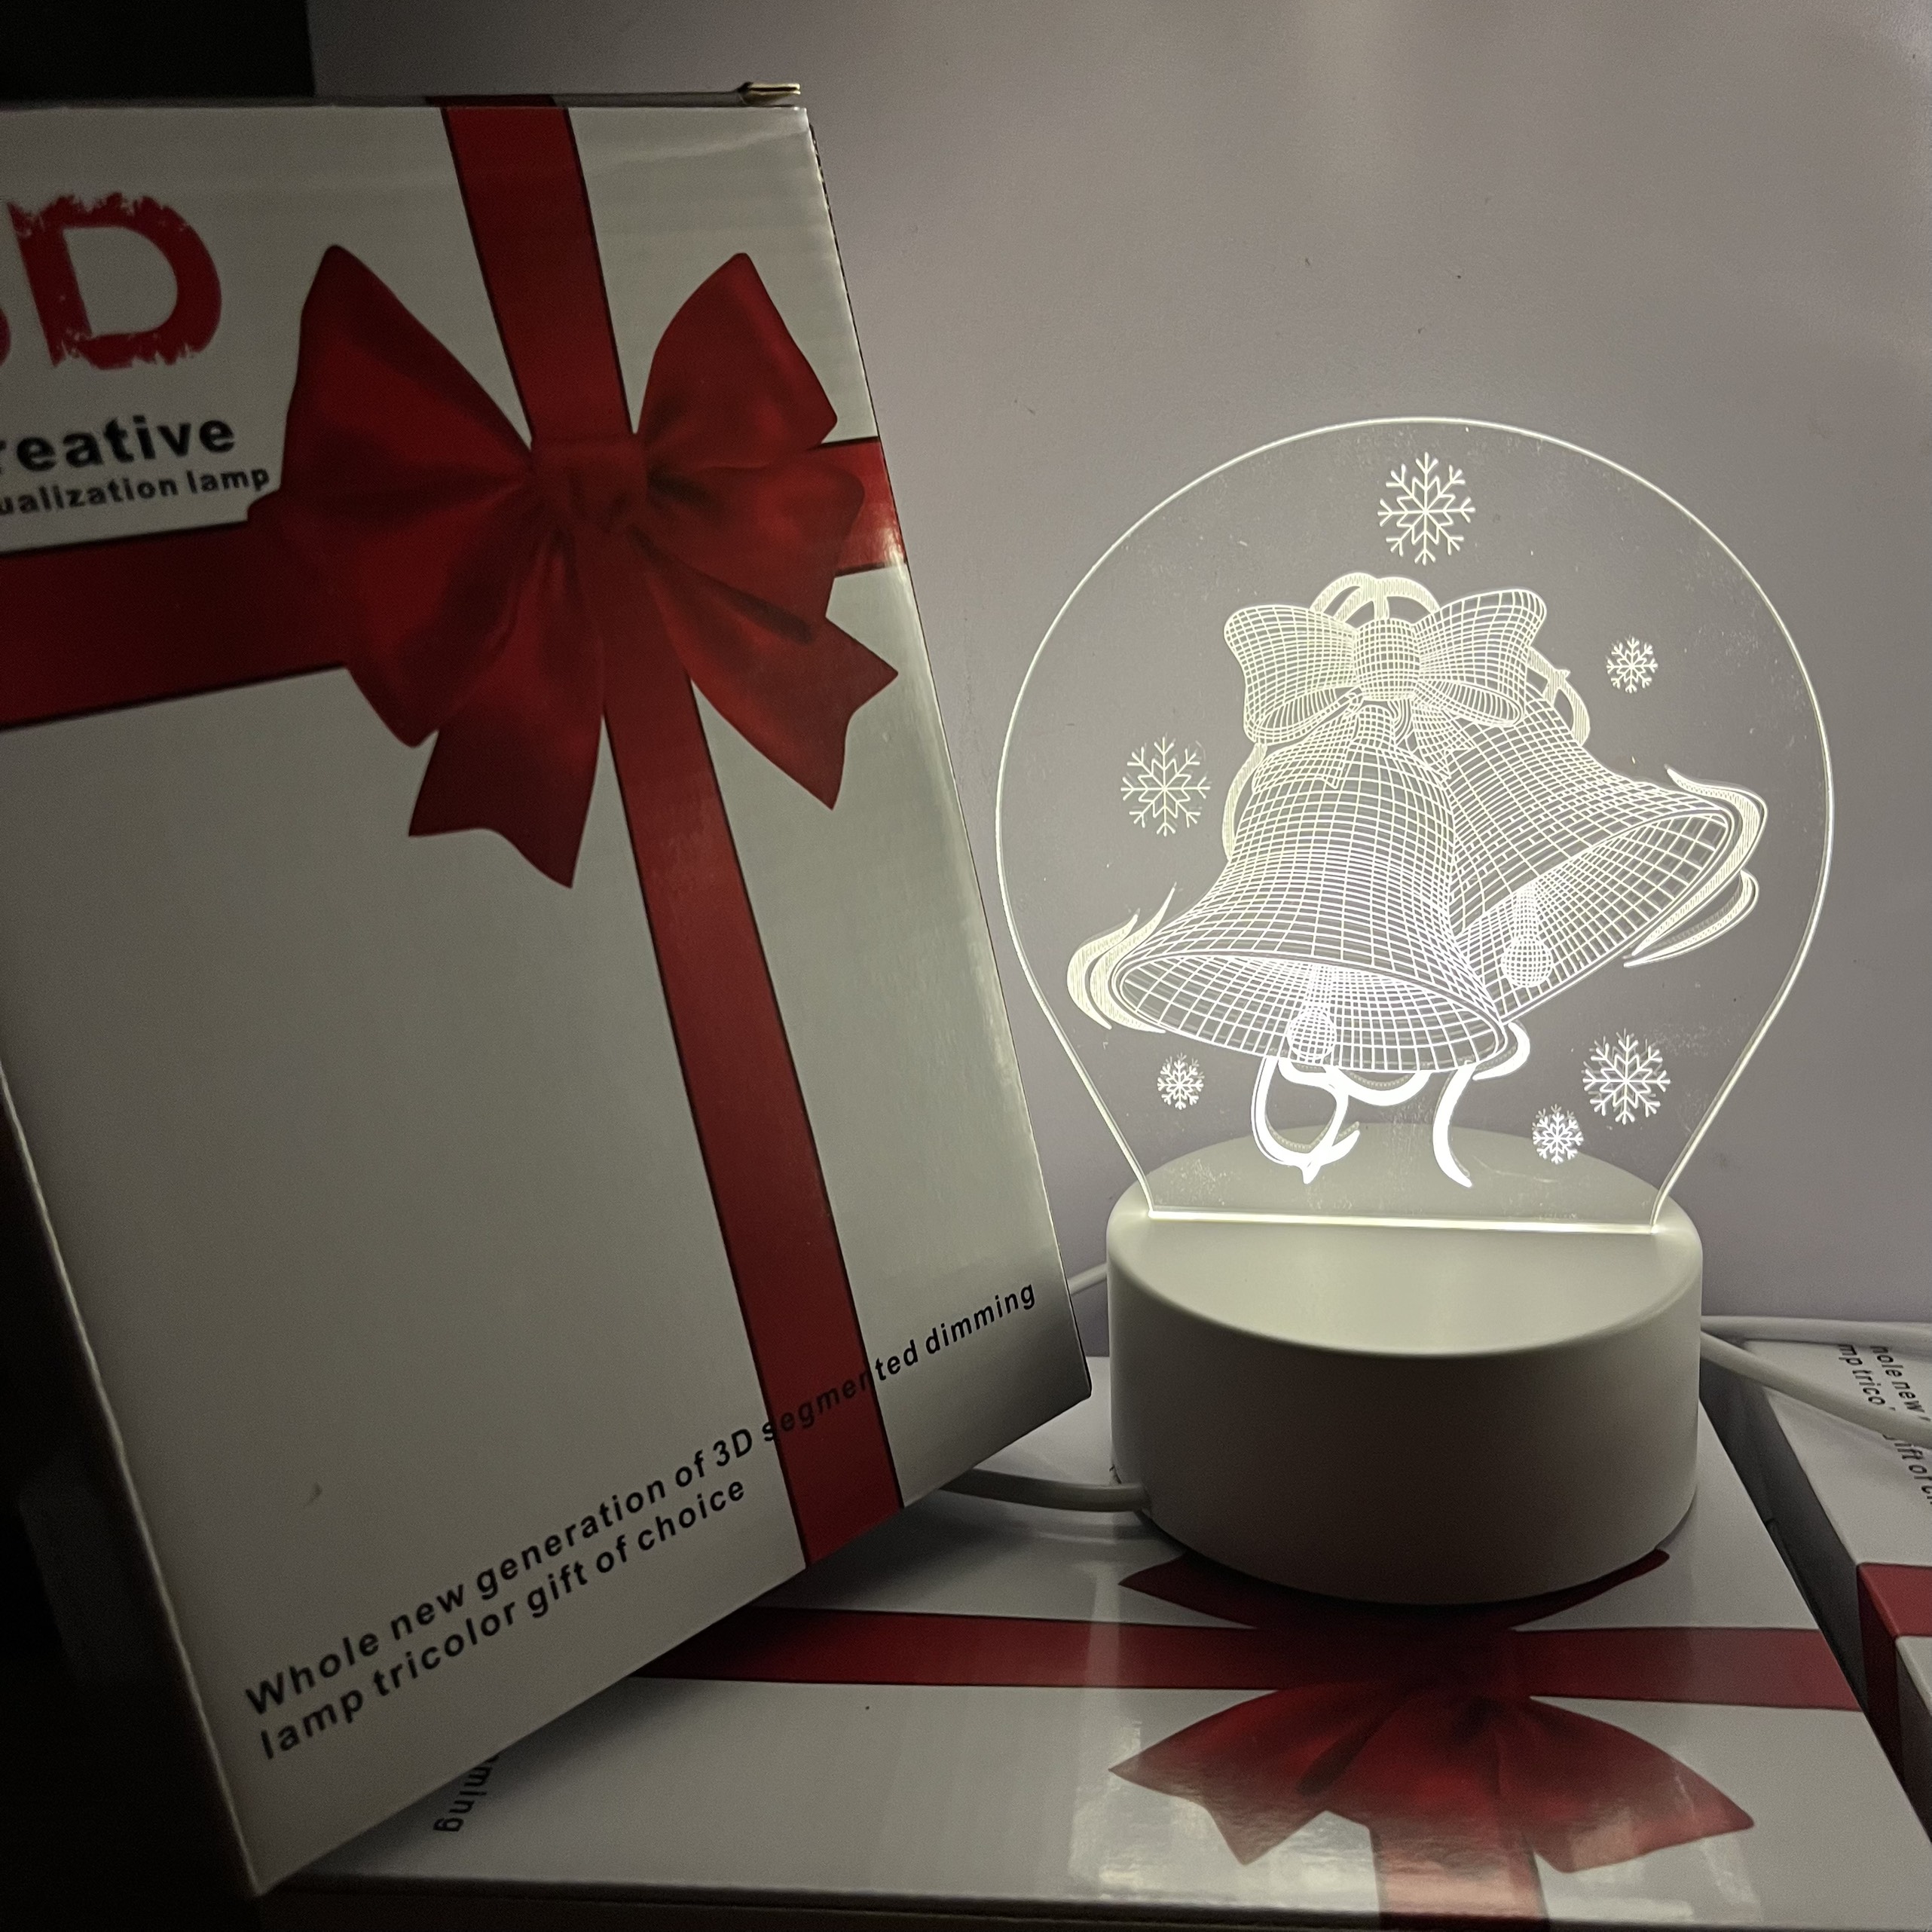 Đèn ngủ để bàn trang trí noel giáng sinh đẹp rẻ hình 3D - quà tặng bạn công ty vô cùng ý nghĩa